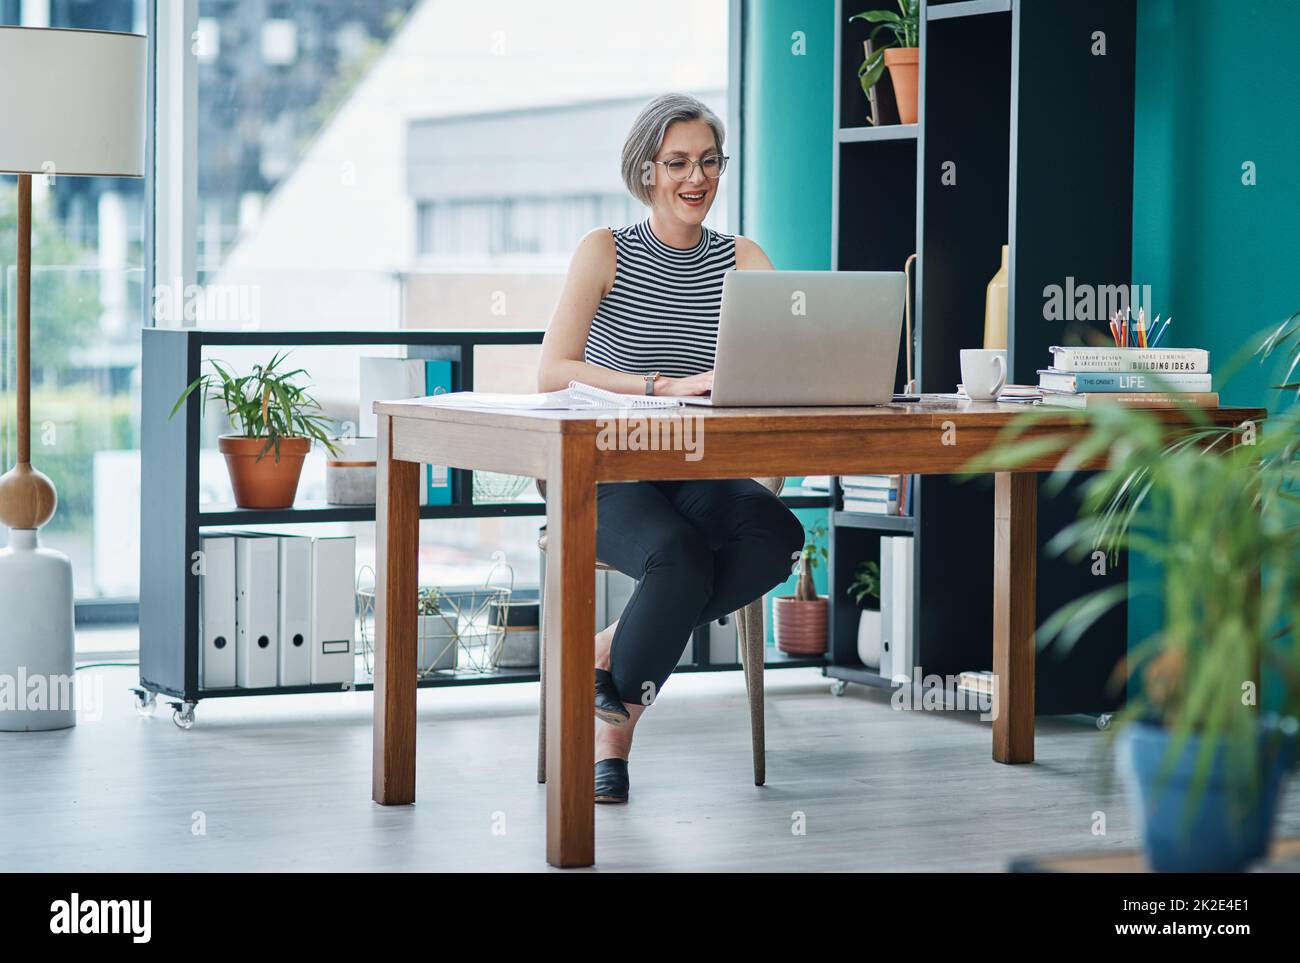 Utilisez des outils en ligne pour améliorer votre efficacité et votre productivité. Photo d'une femme d'affaires mûre utilisant son ordinateur portable tout en étant assise à son bureau. Banque D'Images